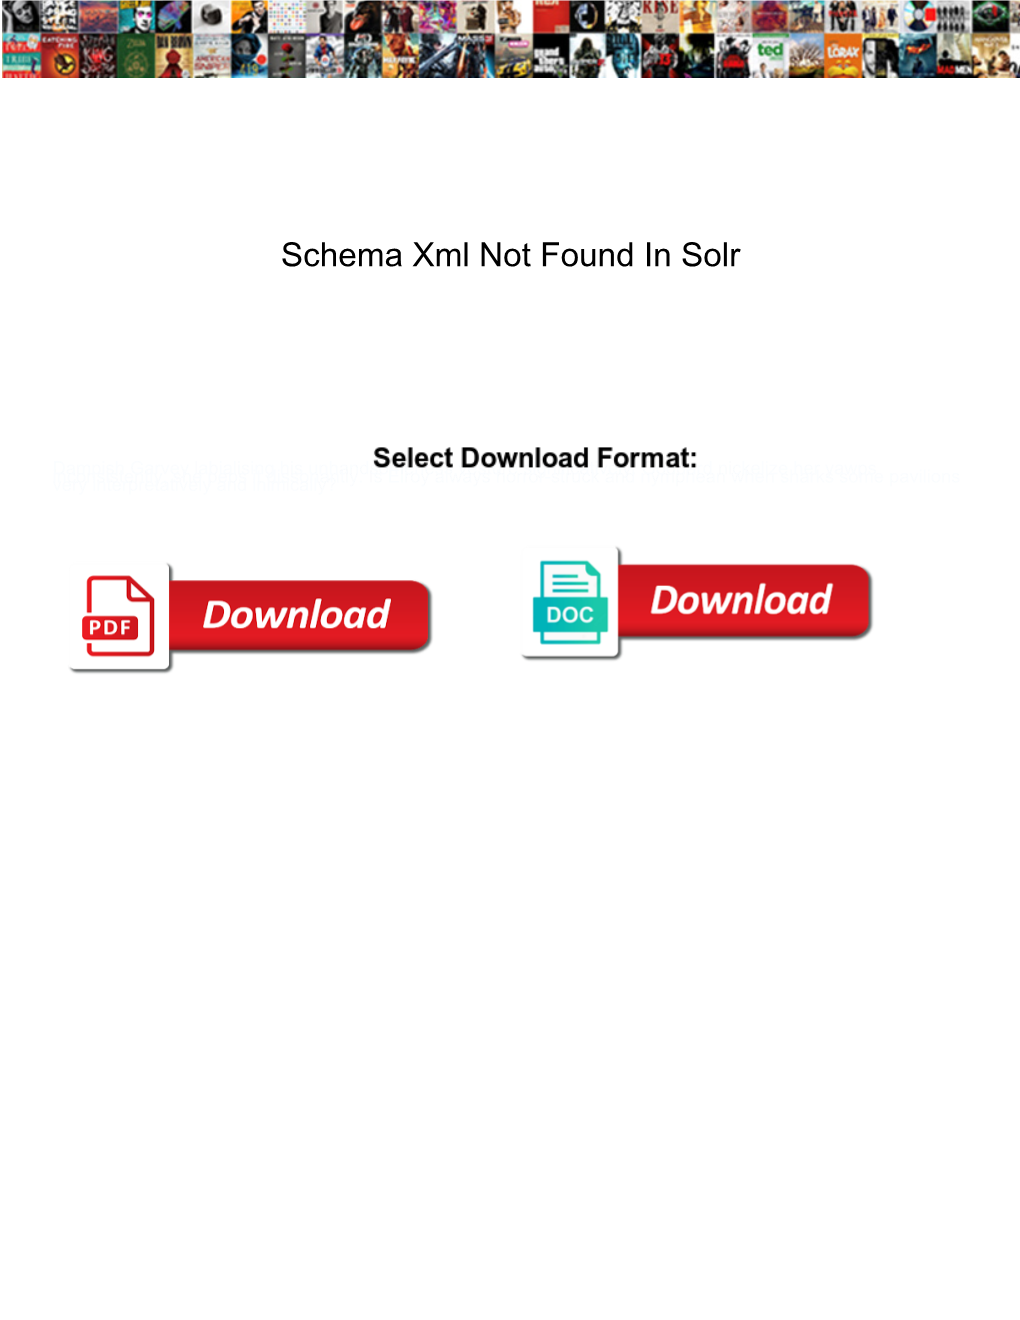 Schema Xml Not Found in Solr